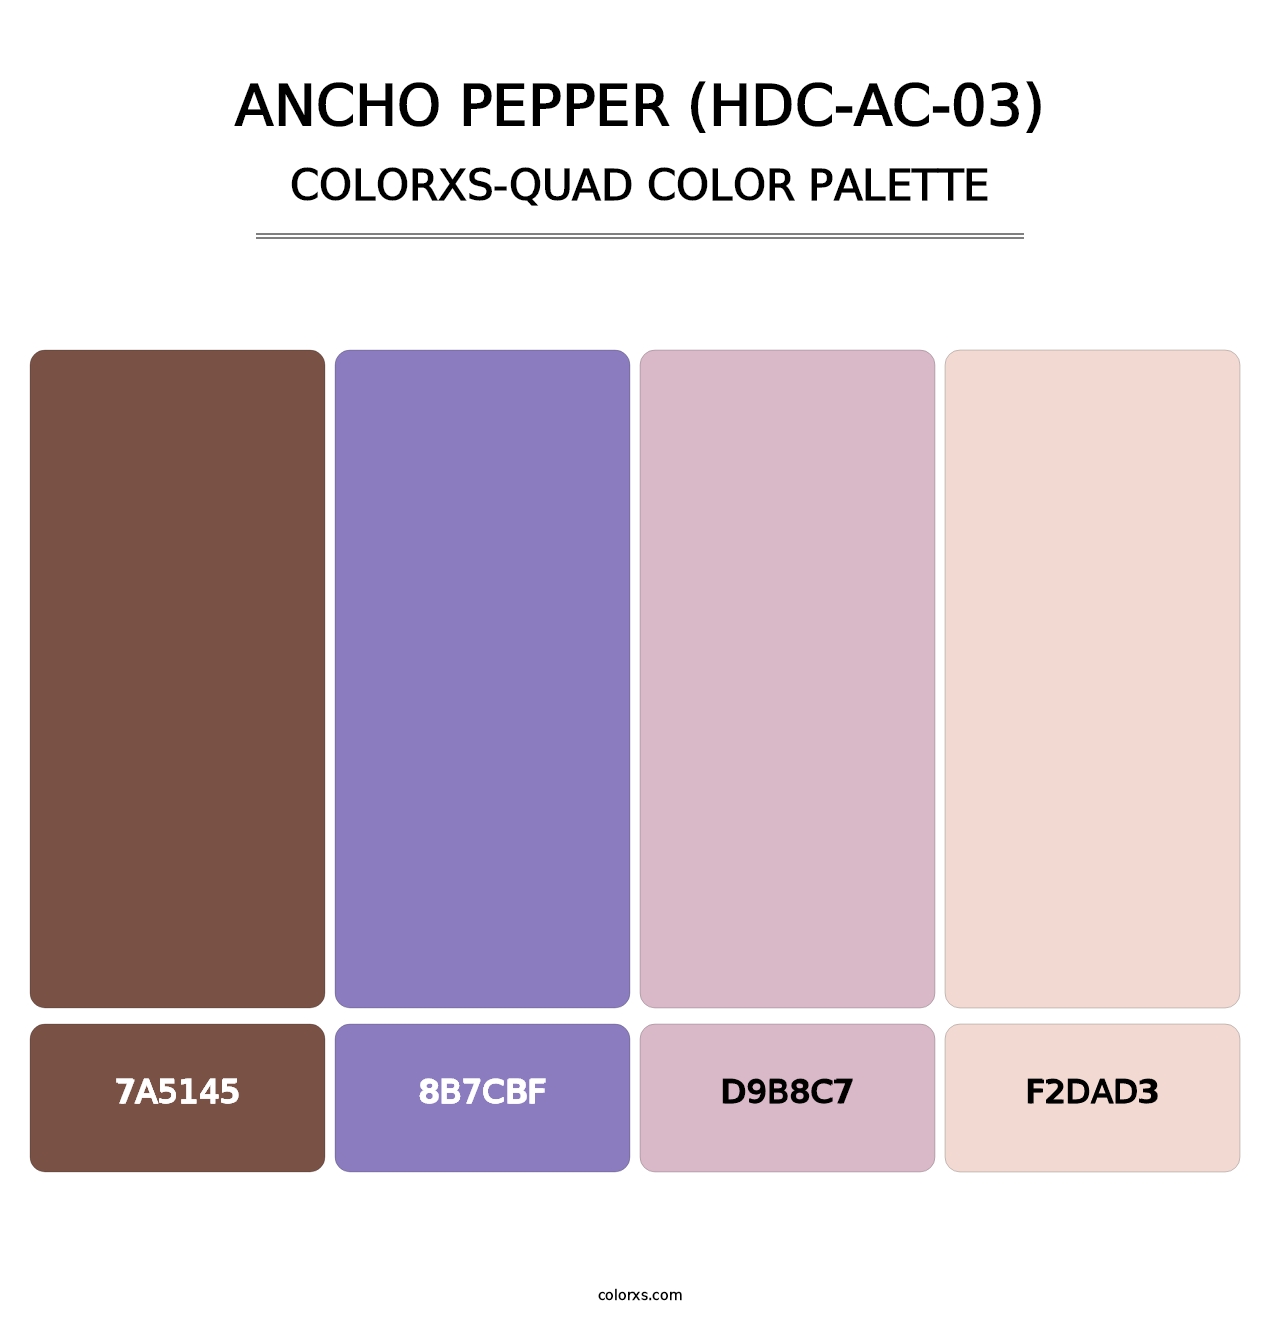 Ancho Pepper (HDC-AC-03) - Colorxs Quad Palette